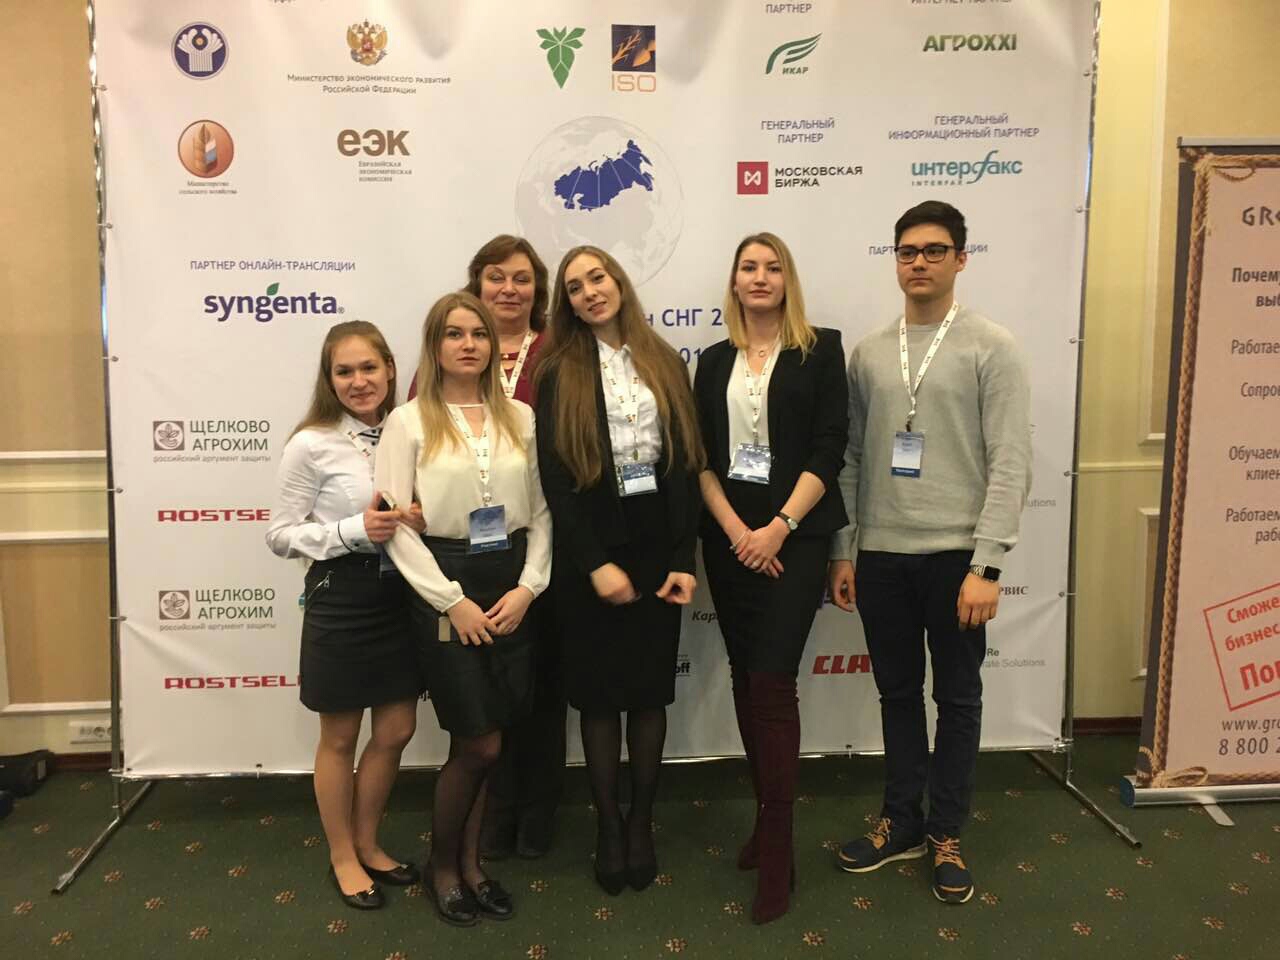 Студенты МГУПП приняли участие в Шестой ежегодной, международной конференции «Рынок сахара стран СНГ 2017»